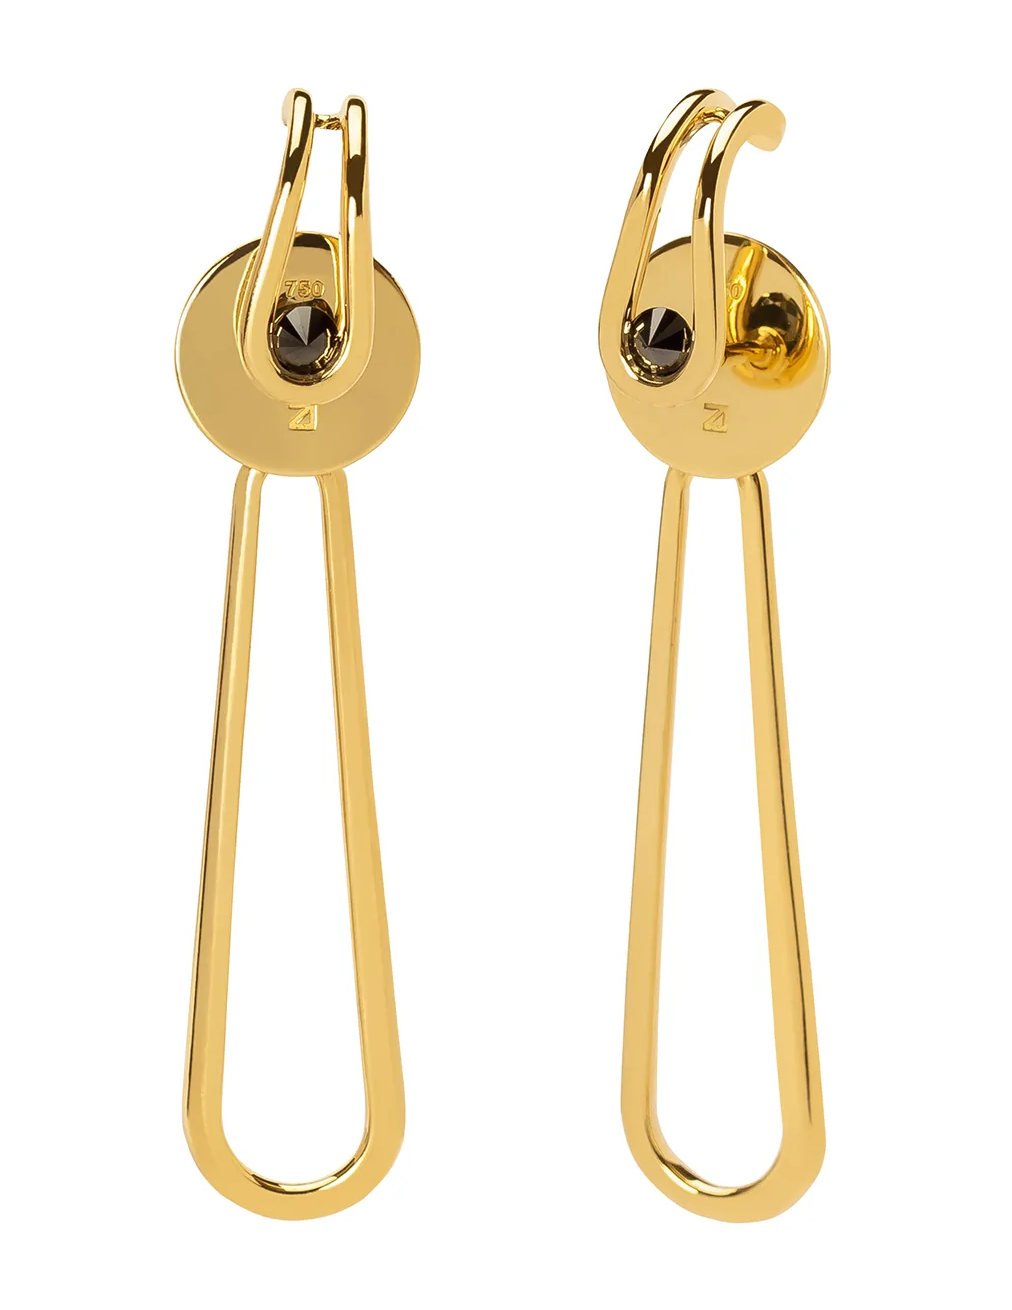 Biela Earrings in 18k Yellow Gold with Black Diamonds